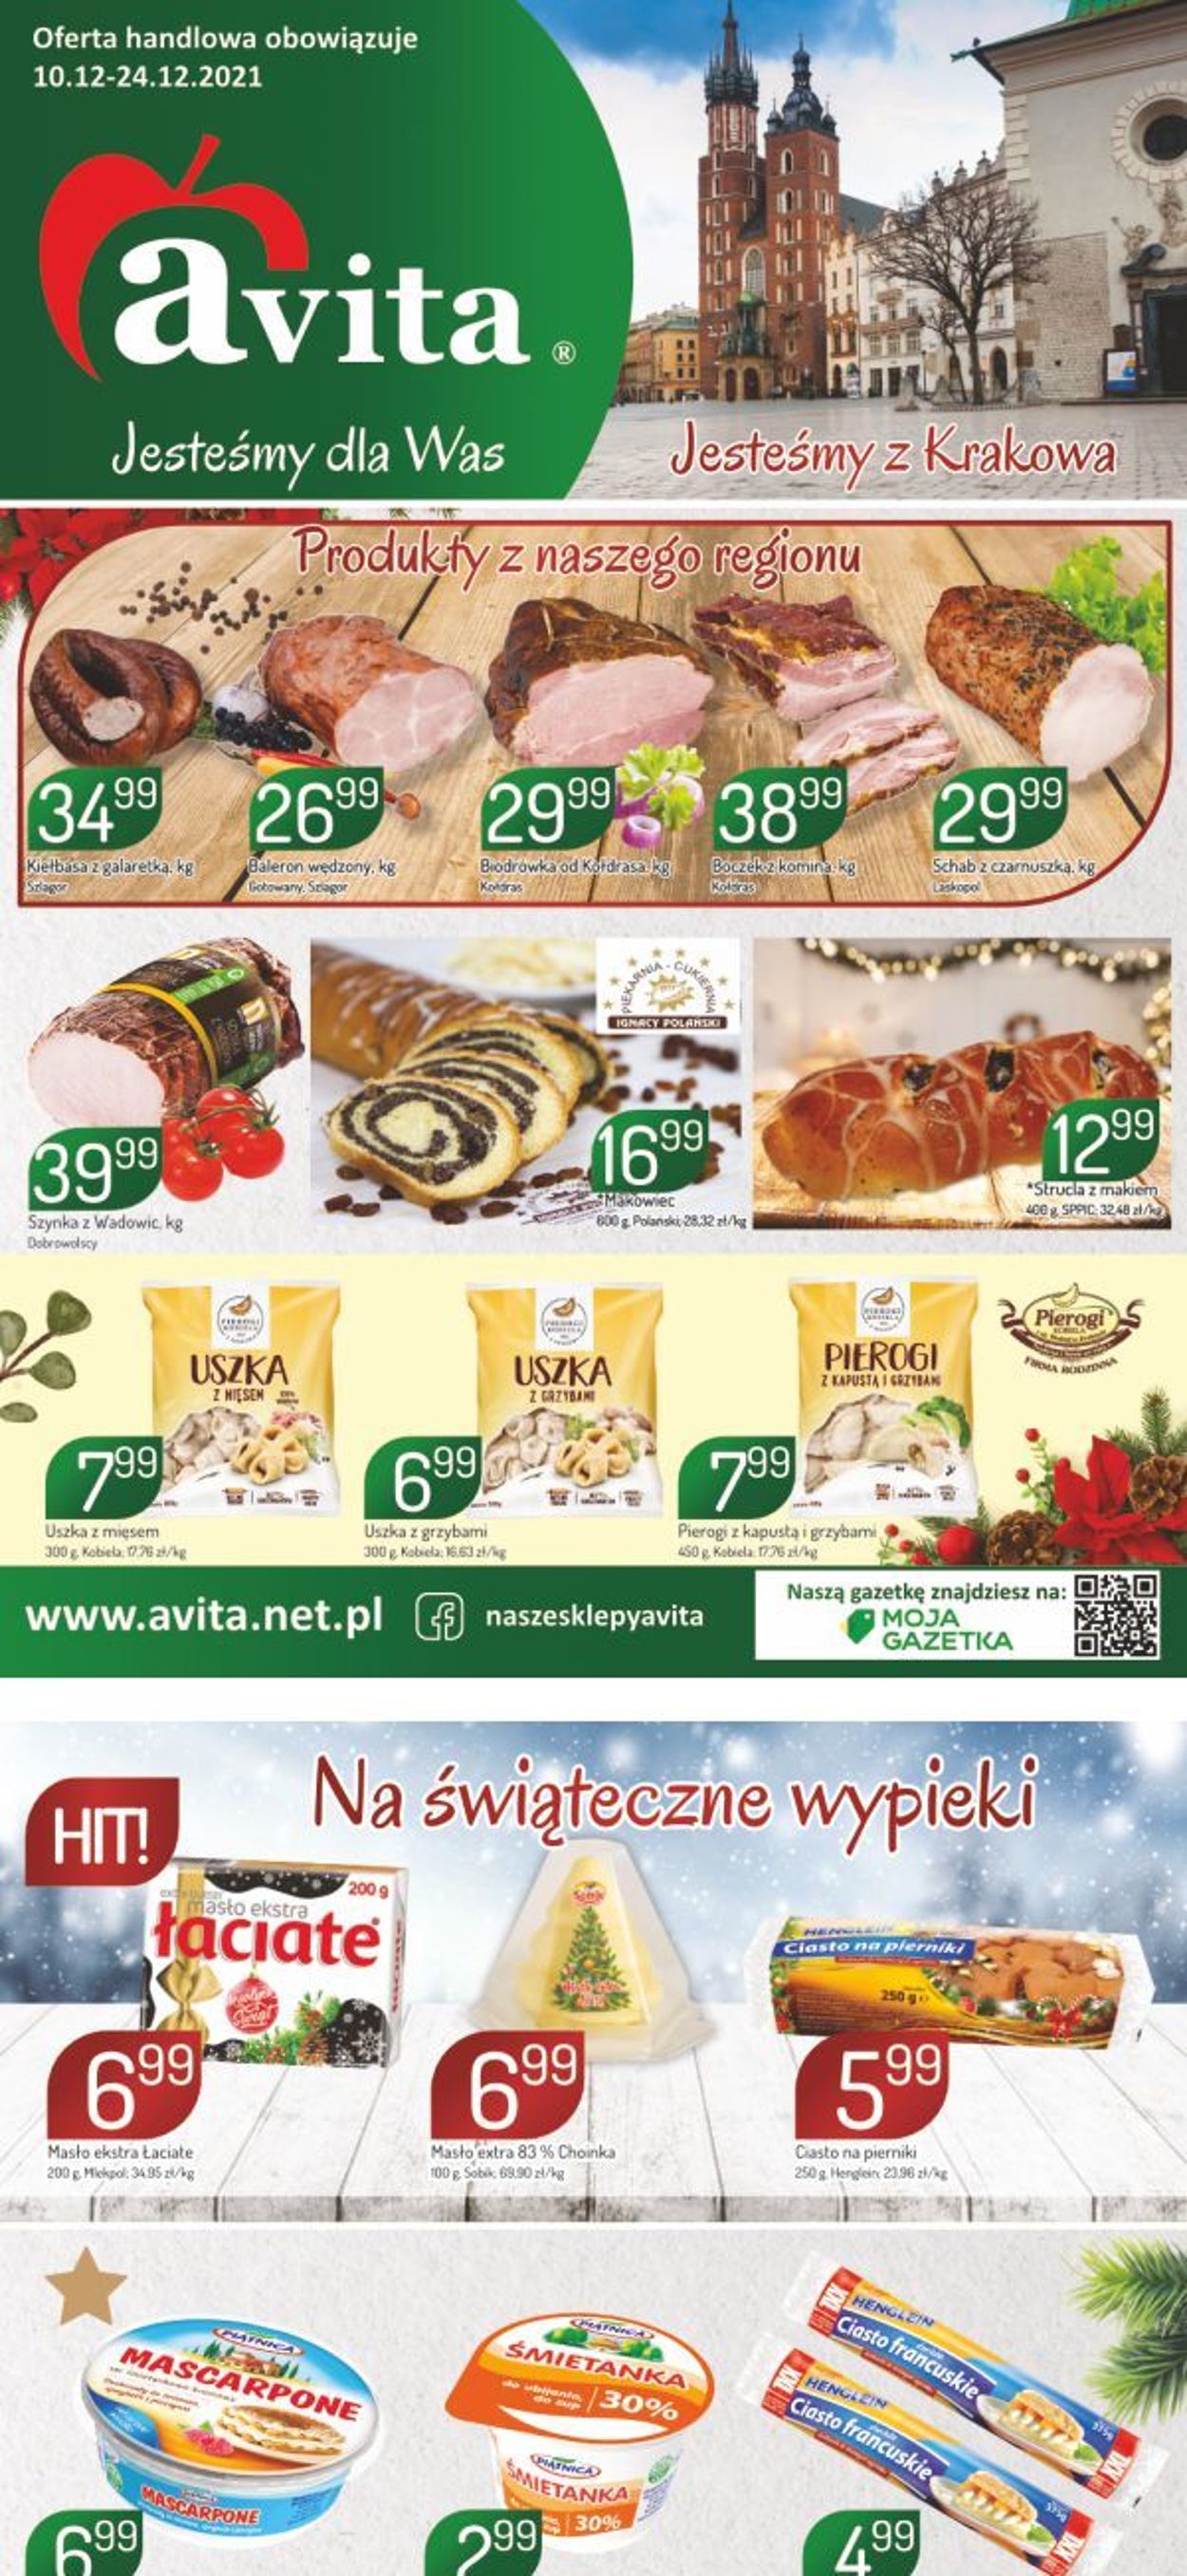 Gazetka promocyjna Avita - 10.12-24.12.2021